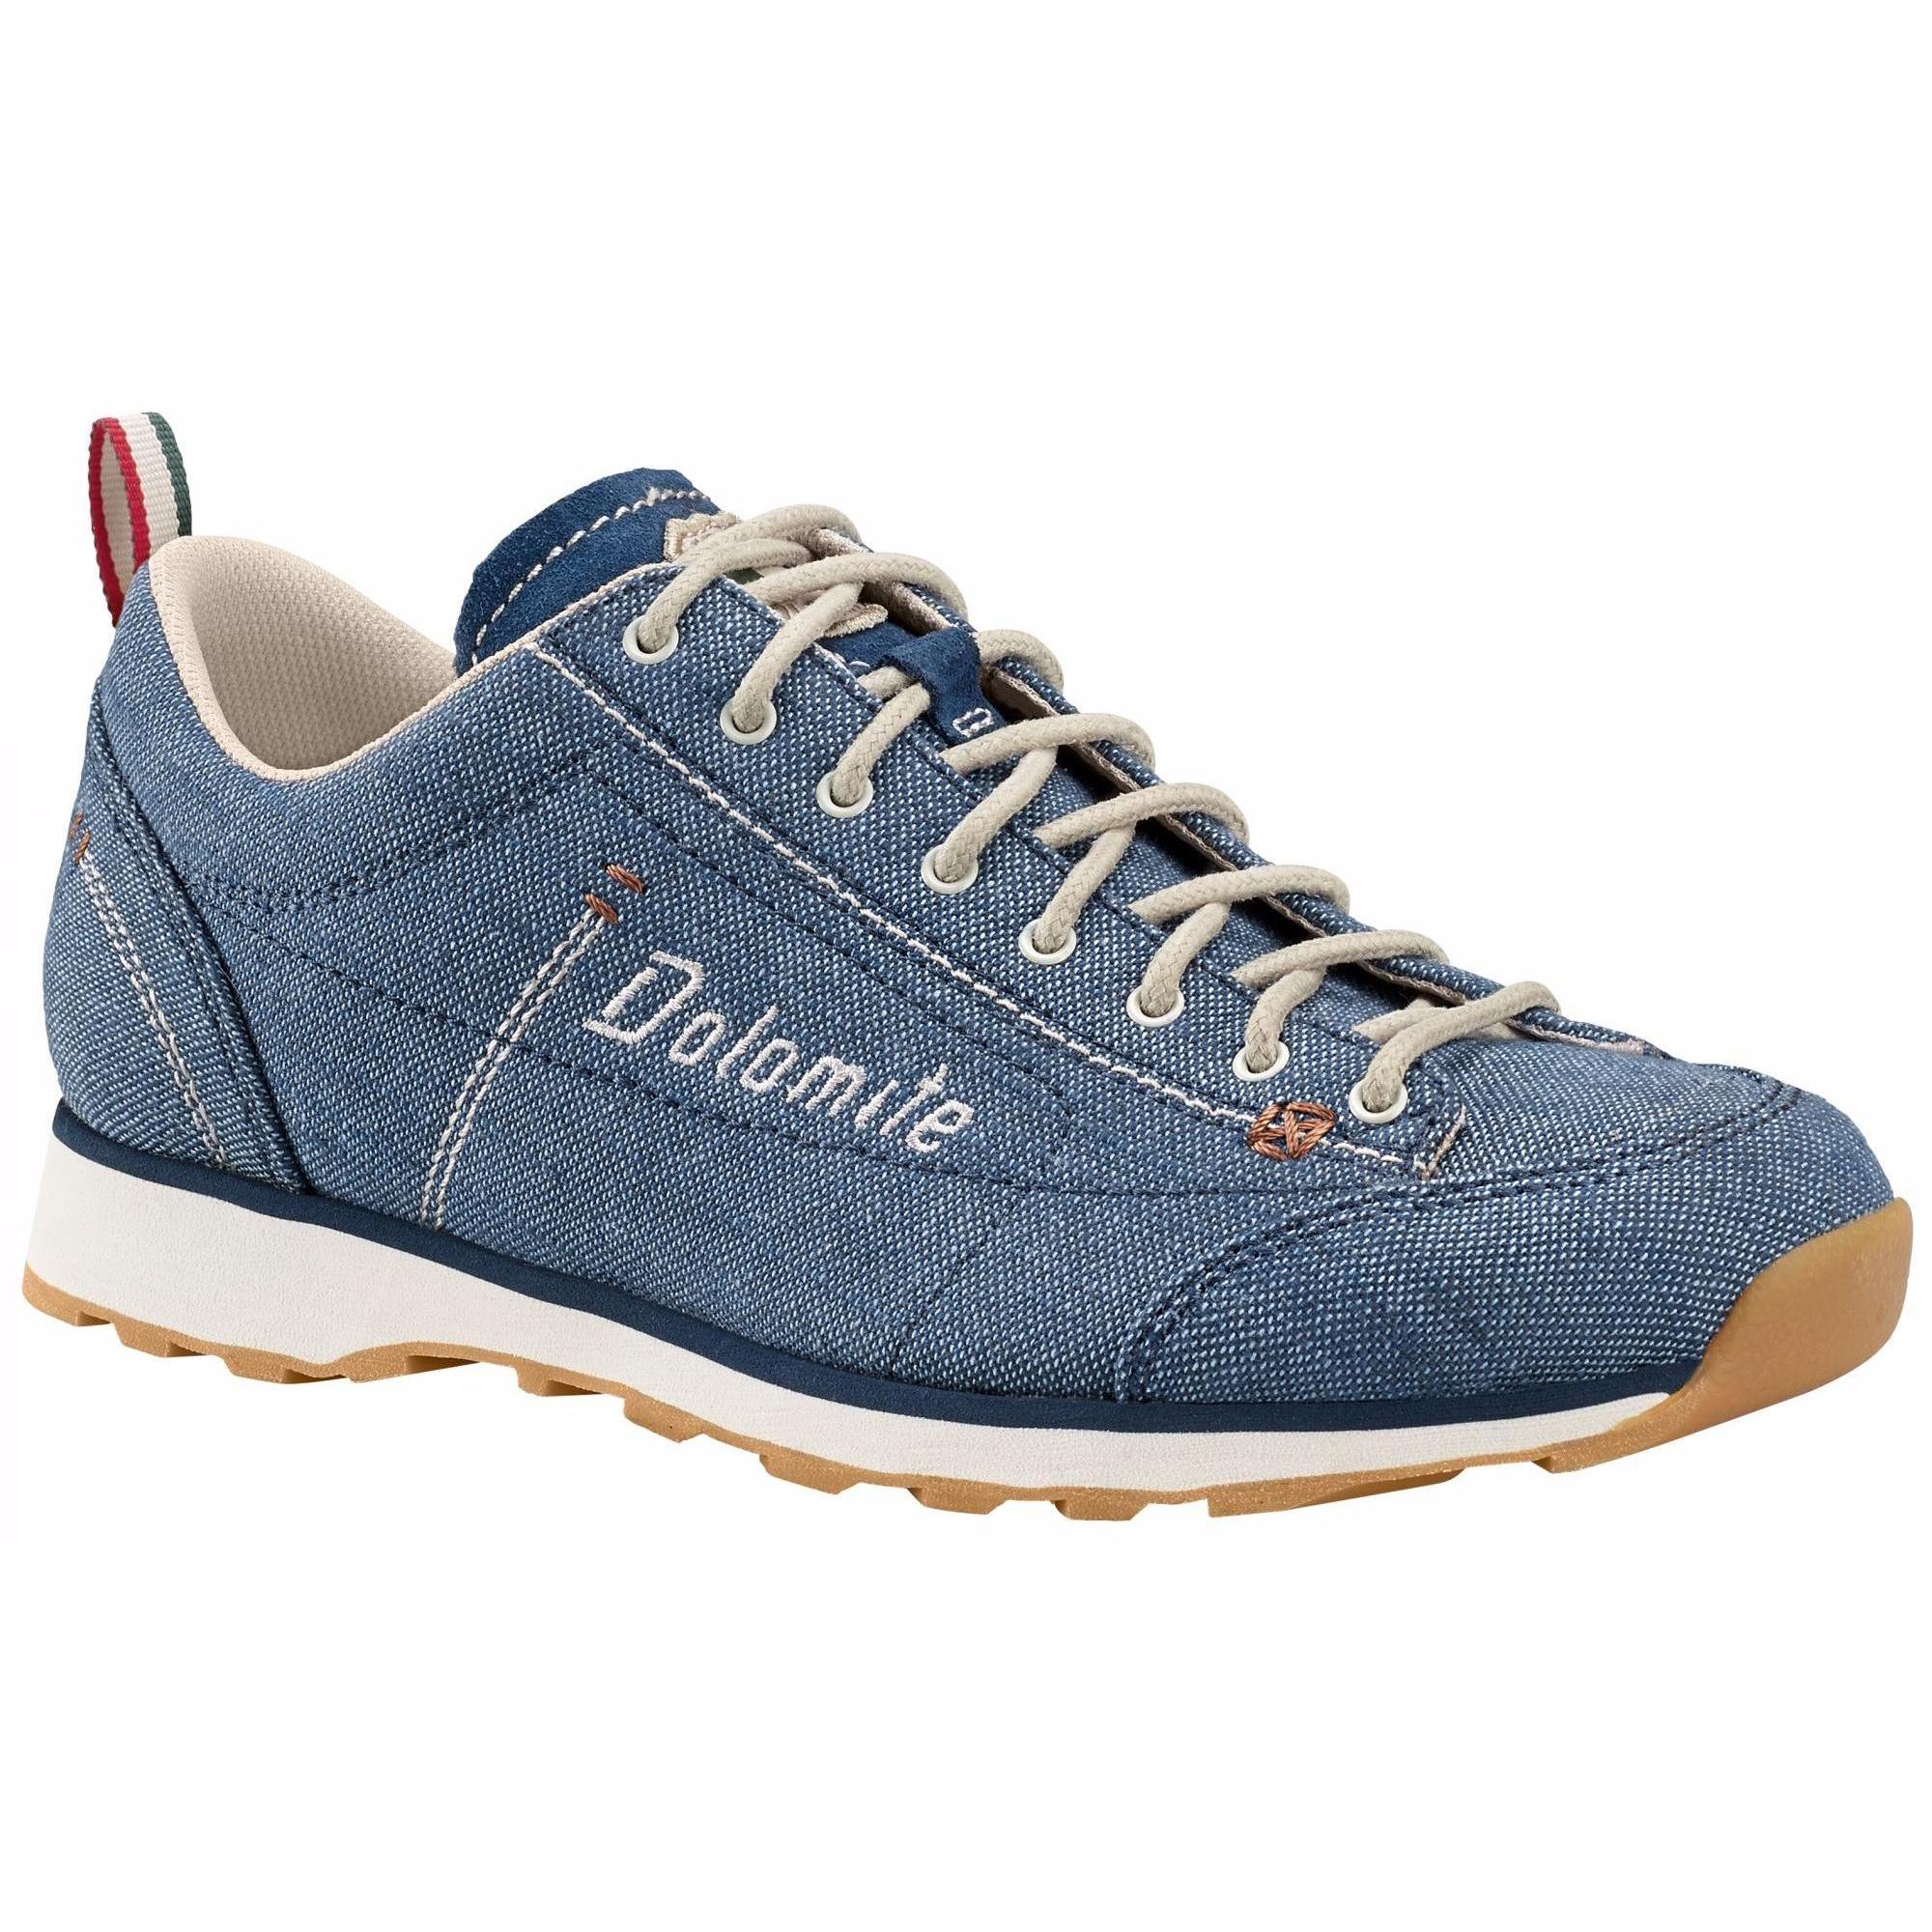 Ботинки Dolomite Cinquantaquattro LH Canvas, denim blue/canapa beige, 7 UK